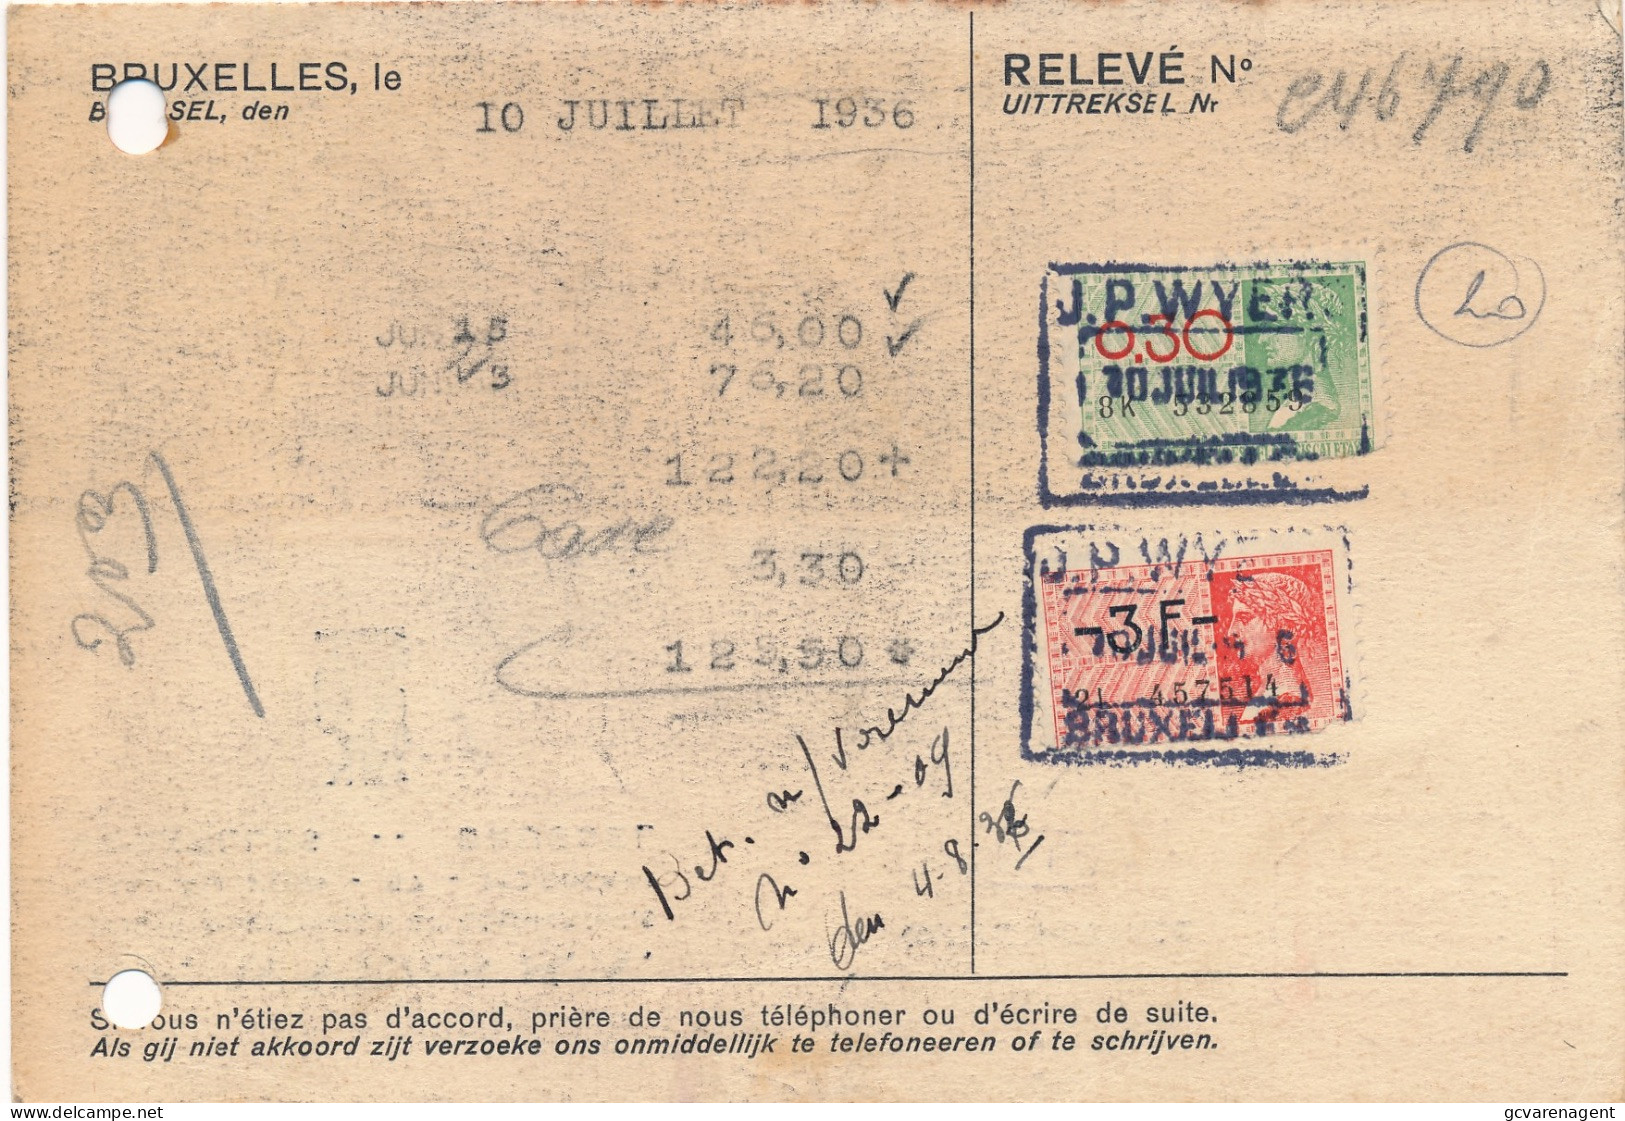 BRUXELLES  BEDRIJFSKAART  2 ZEGELS 0.30 EN 3 FR  RELEVE  1936  2 AFBEELDINGEN - Documenten